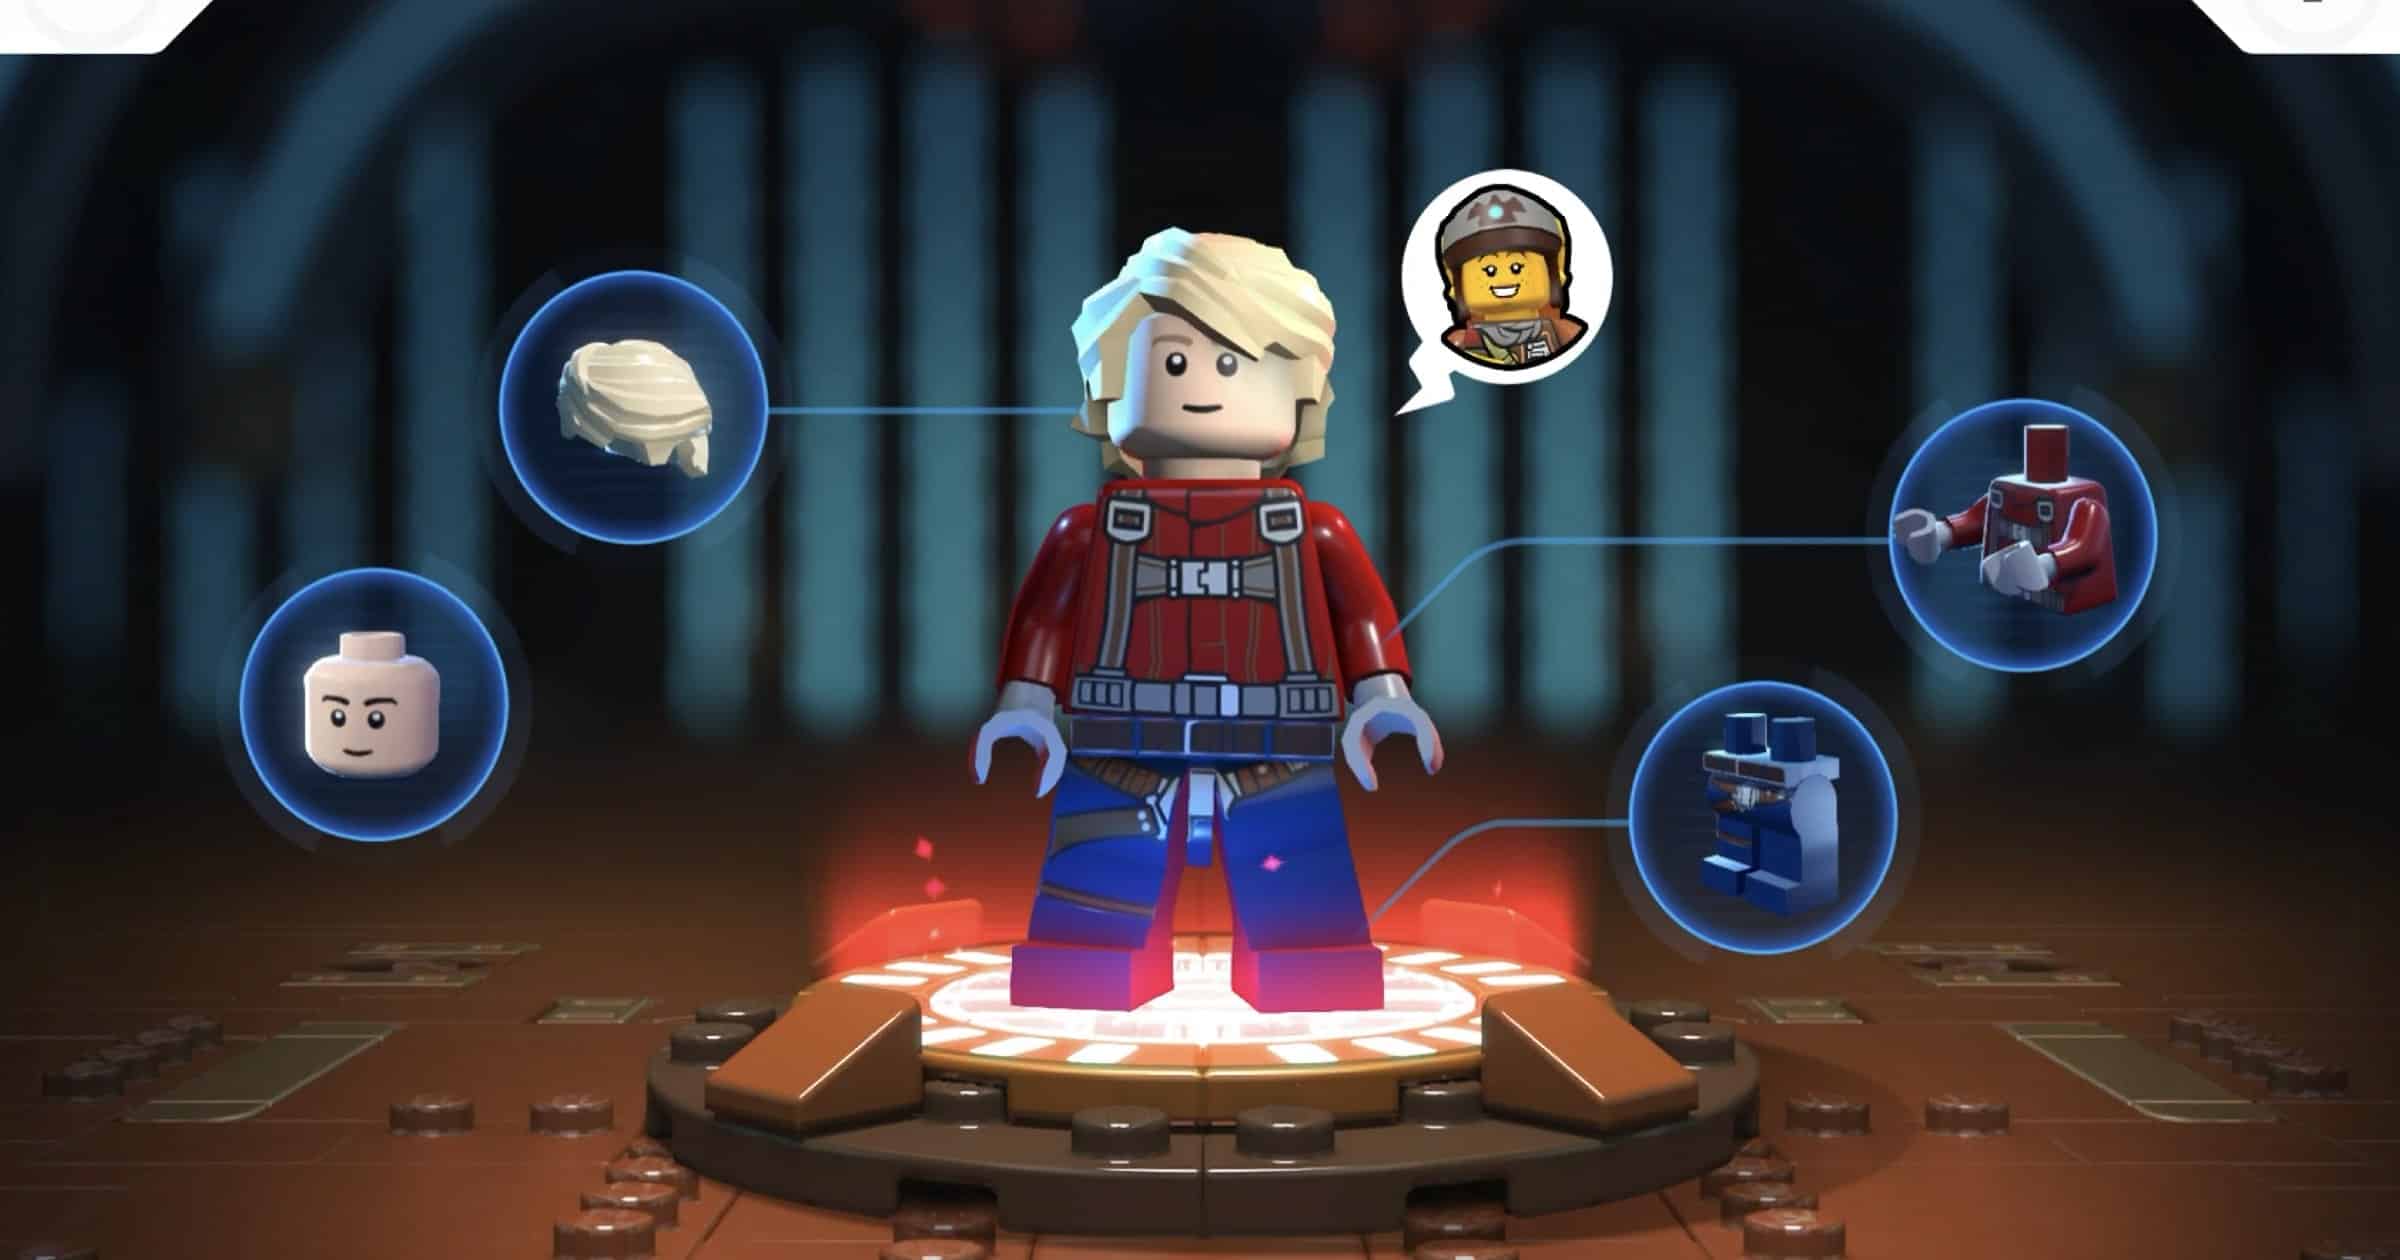 Update to ‘LEGO Star Wars: Castaways’ Brings Hair Colors, Microfighters